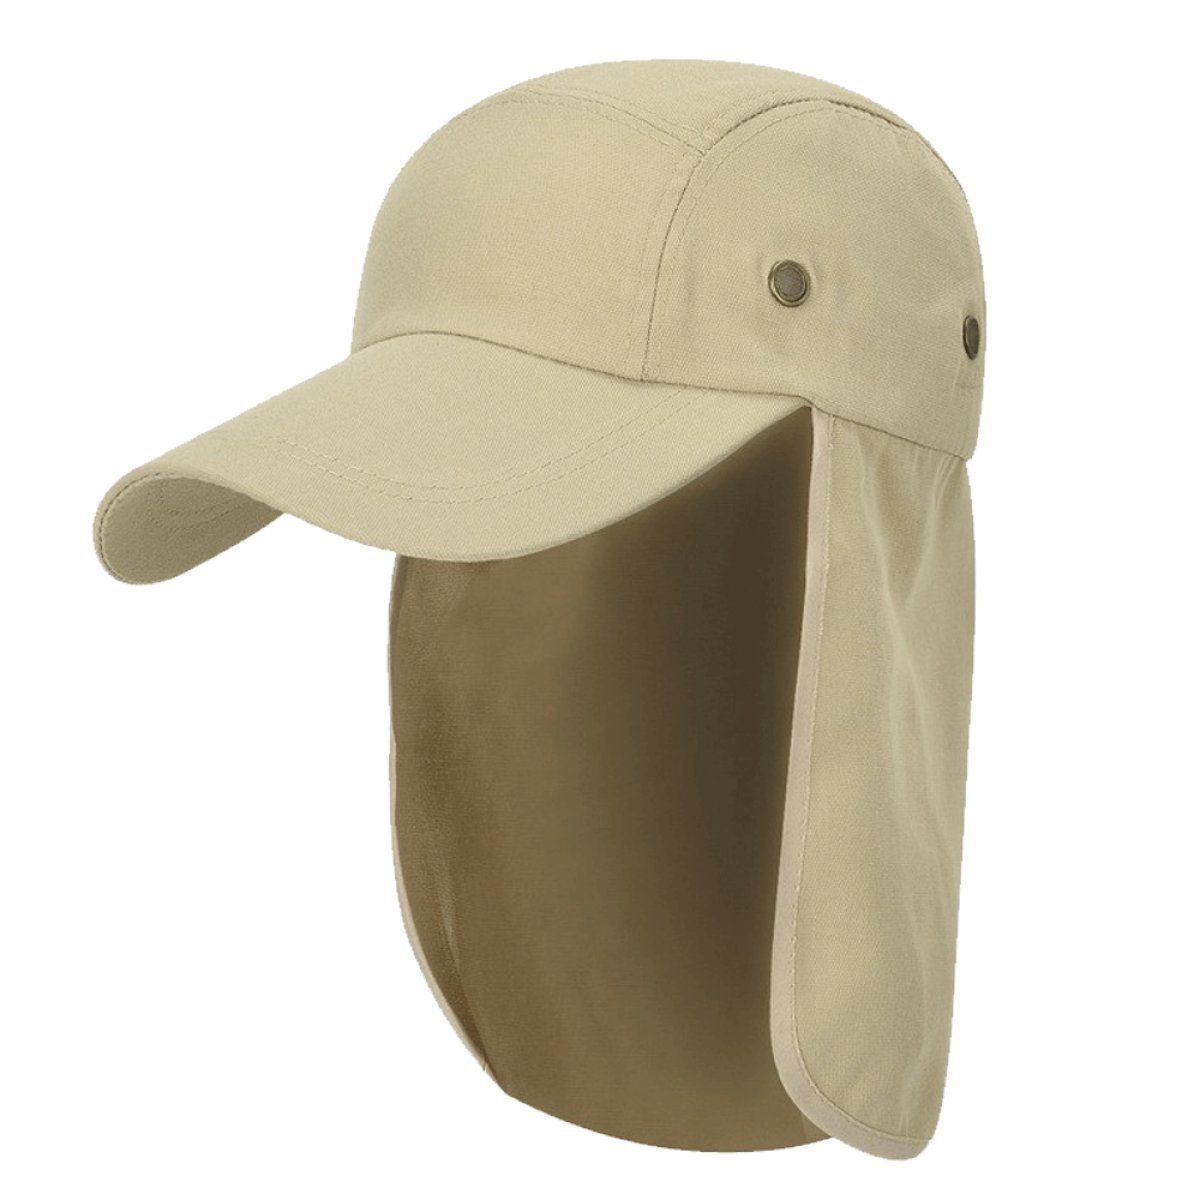 Rwoythk Outdoorhut Hut mit Nackenschutz Mehrzweck Sommer Sonnenhut Sonnenschutz Atmung Beige